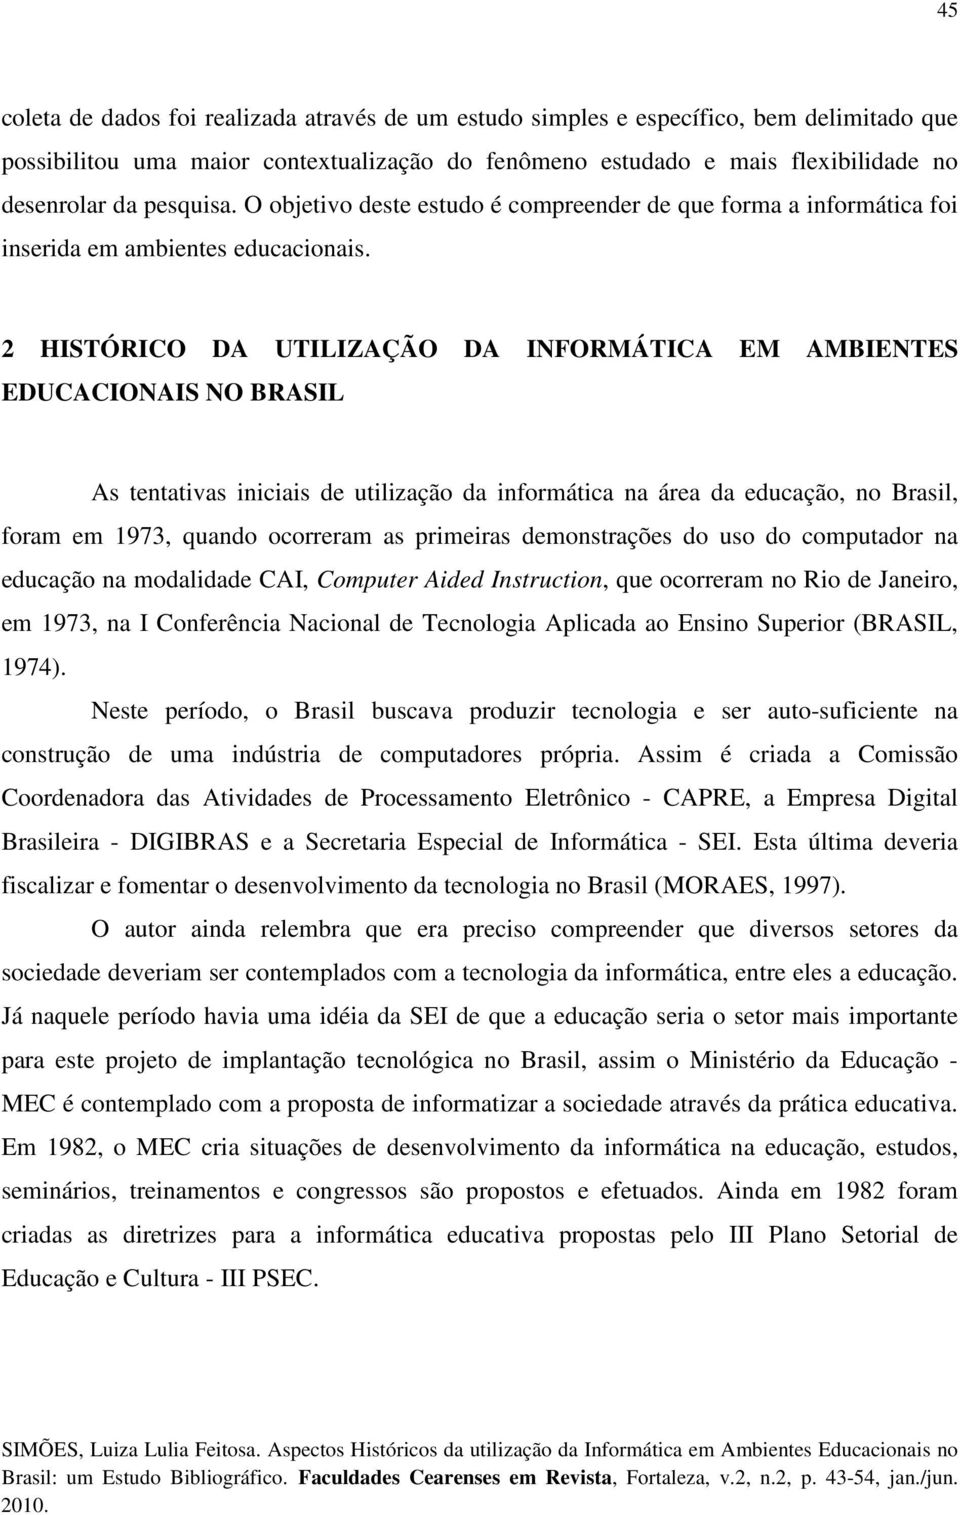 2 HISTÓRICO DA UTILIZAÇÃO DA INFORMÁTICA EM AMBIENTES EDUCACIONAIS NO BRASIL As tentativas iniciais de utilização da informática na área da educação, no Brasil, foram em 1973, quando ocorreram as